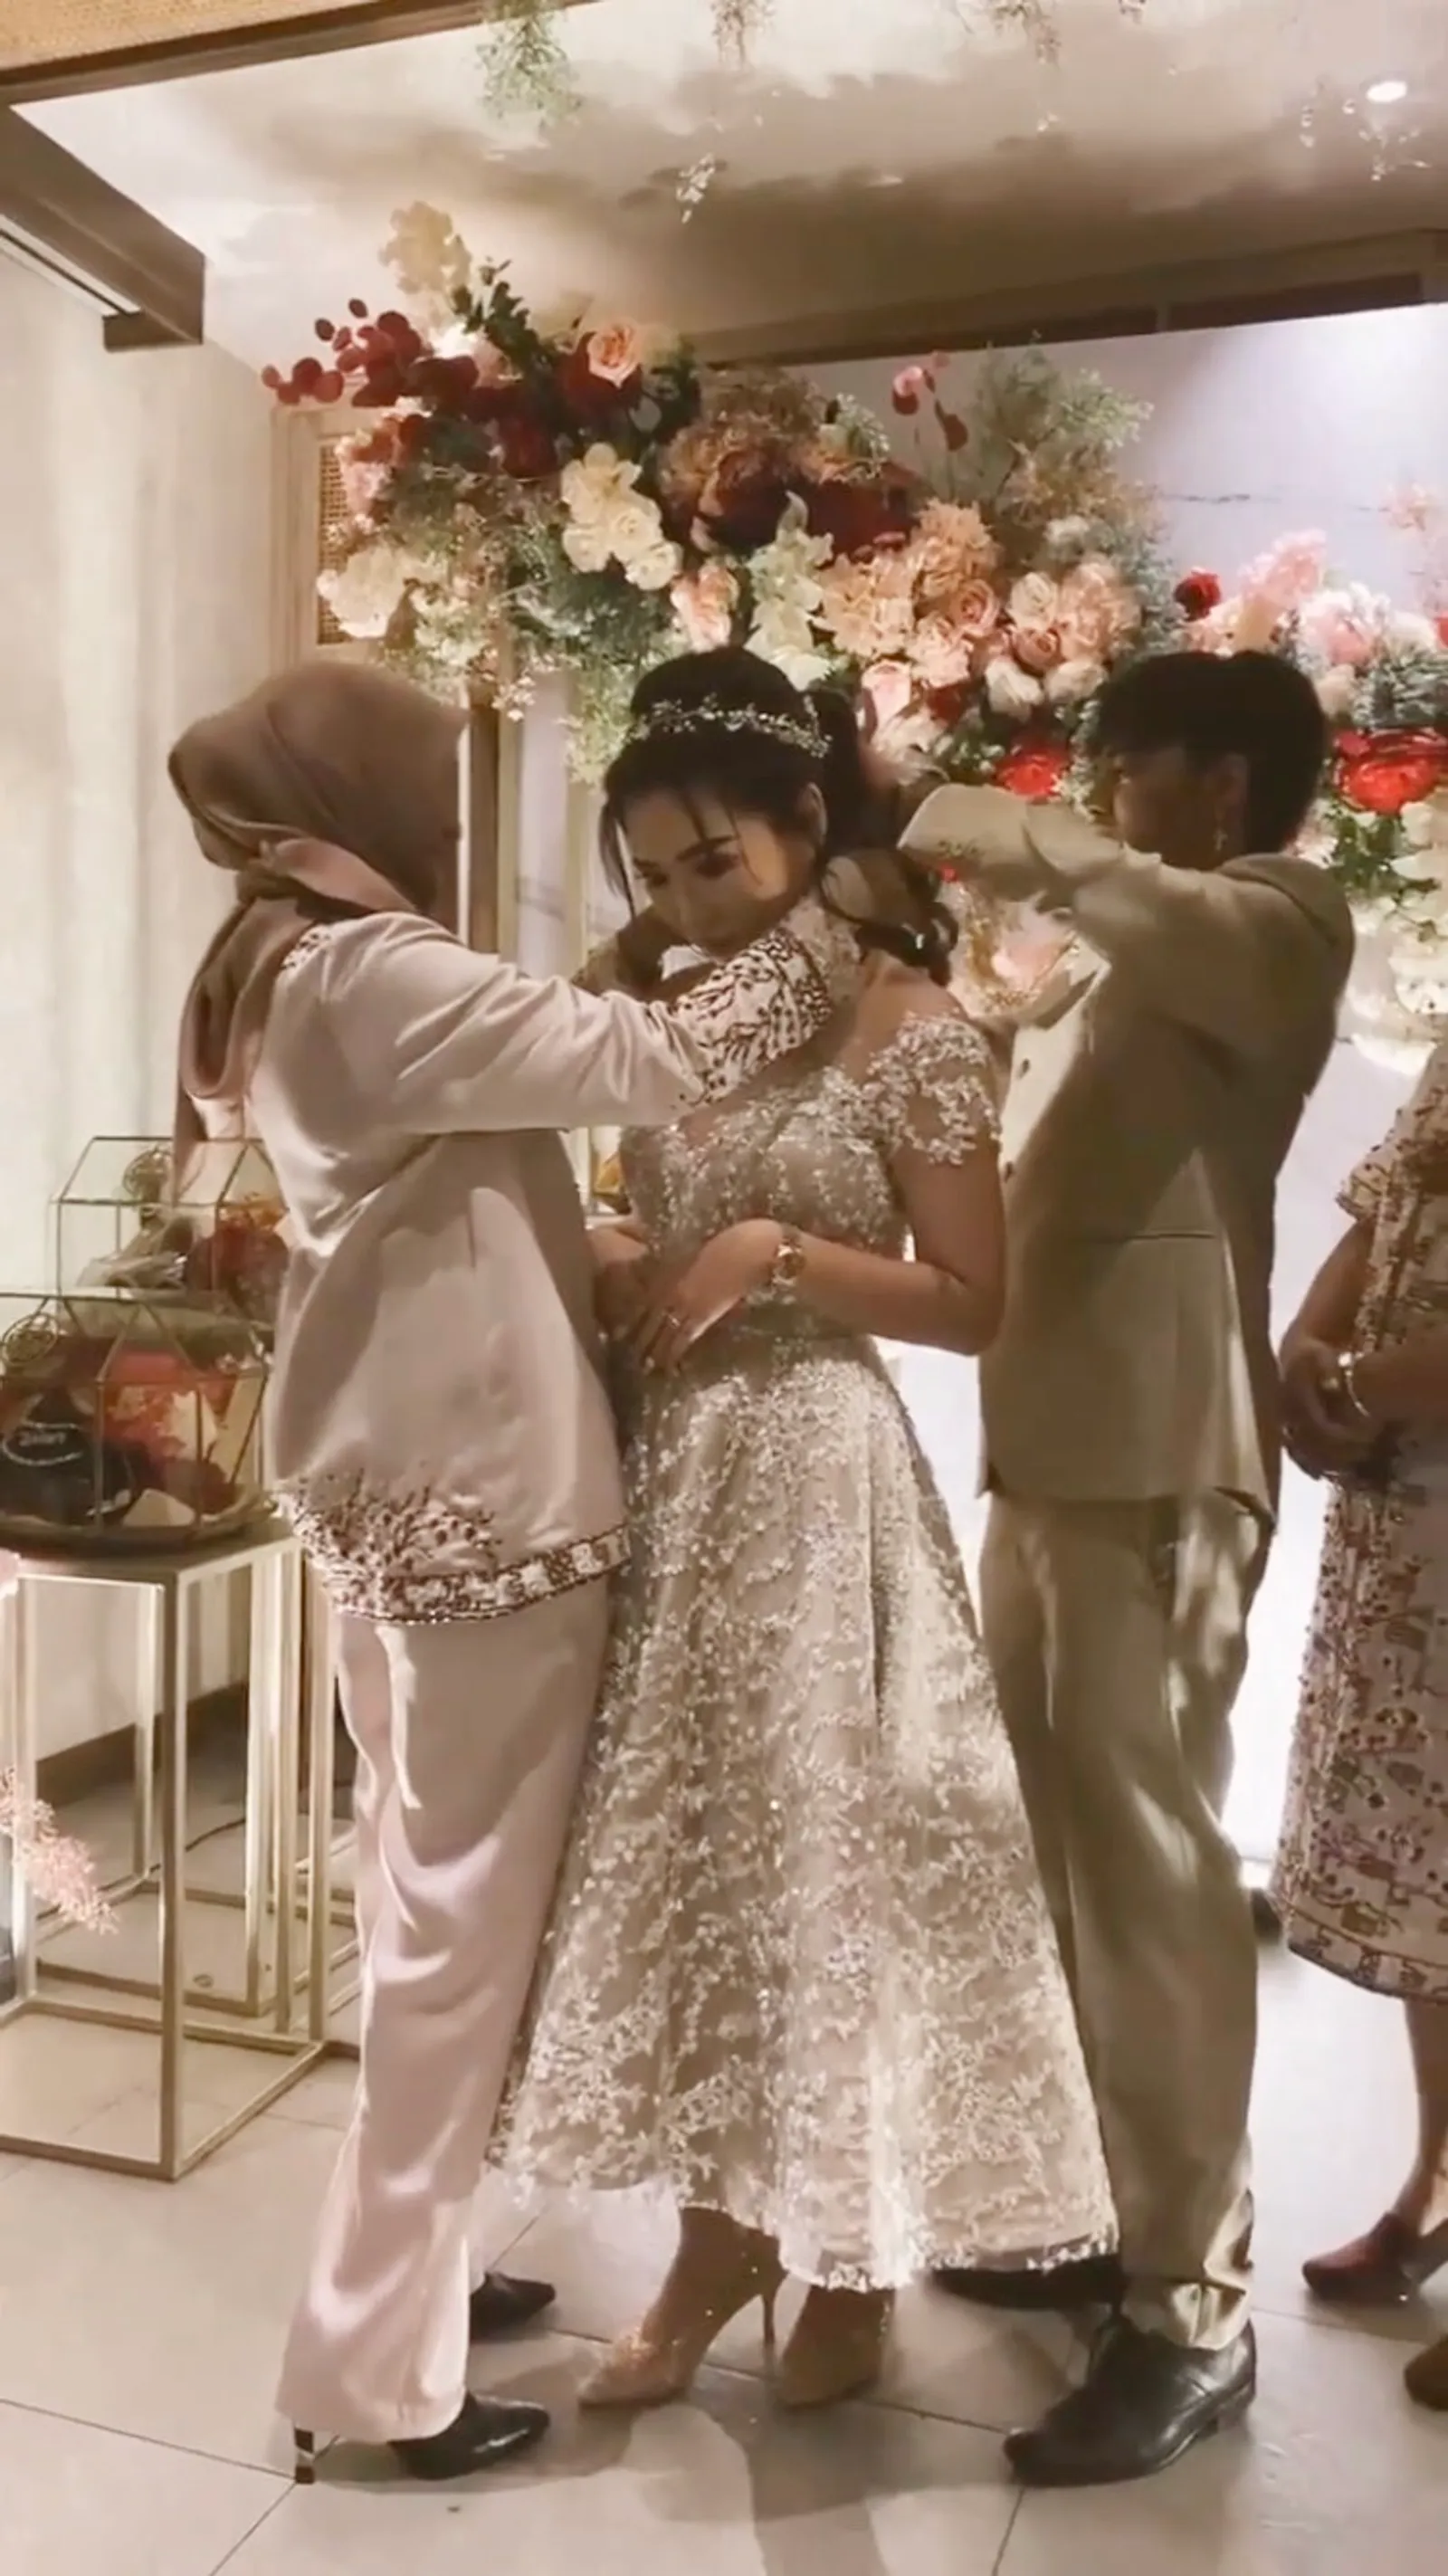 Segera Menikah, Intip 10 Momen Sangjit Reza Arap dan Wendy Walters